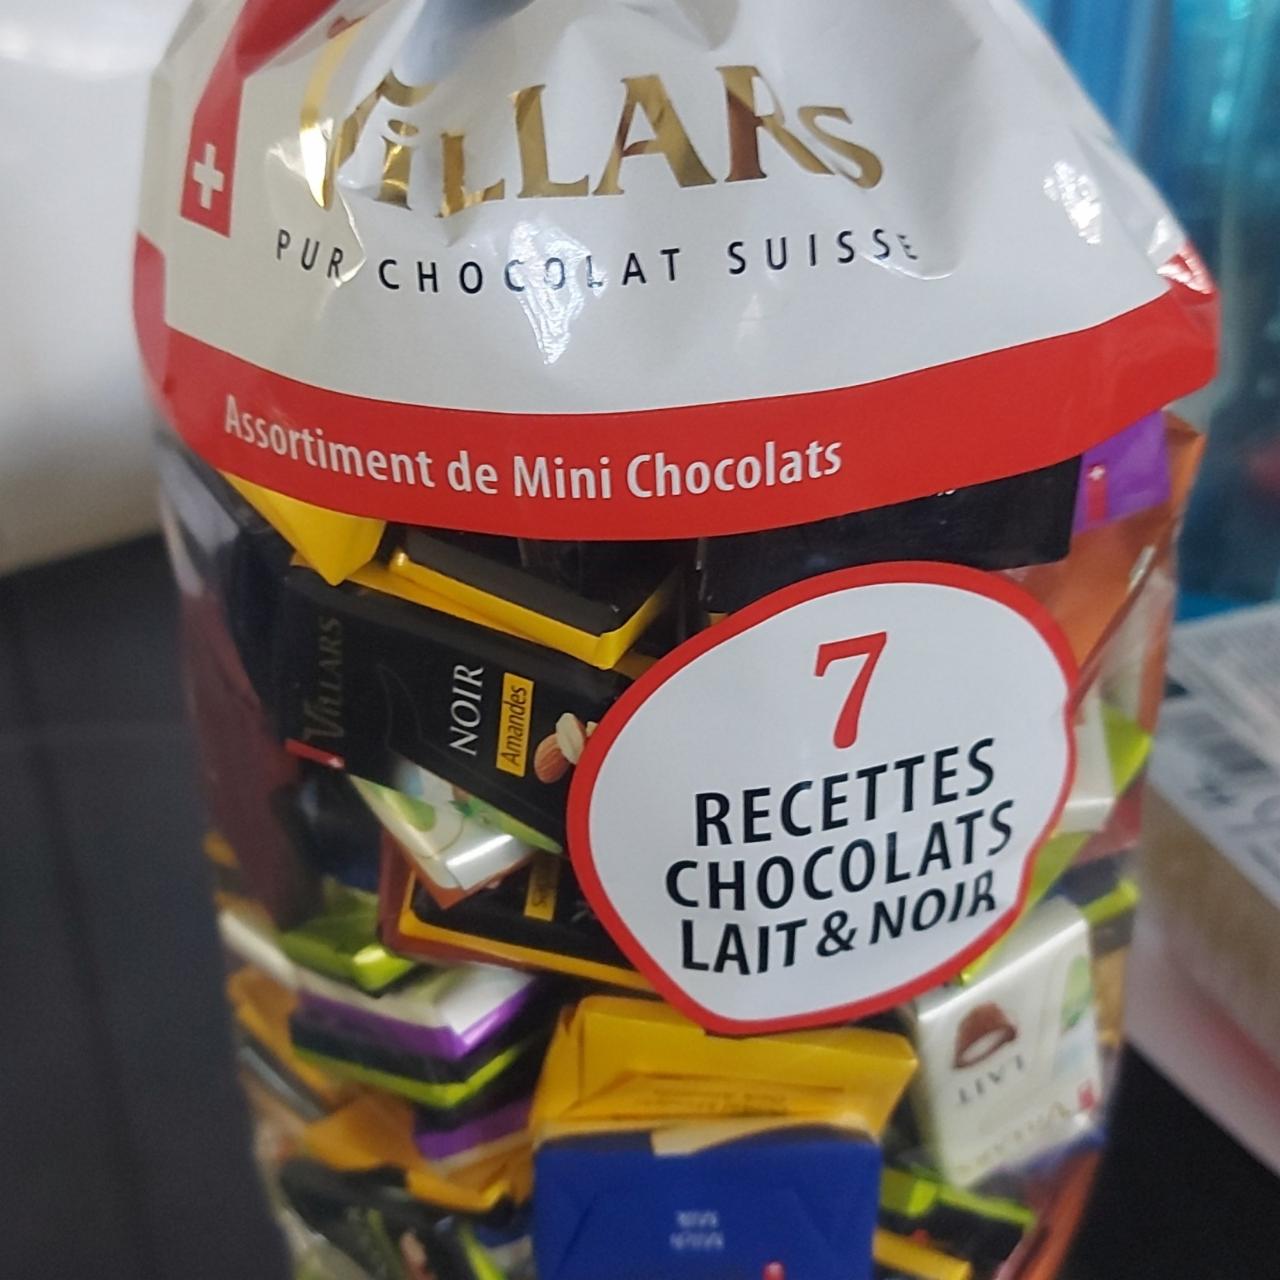 Fotografie - Assortiment de Mini Chocolats Villars